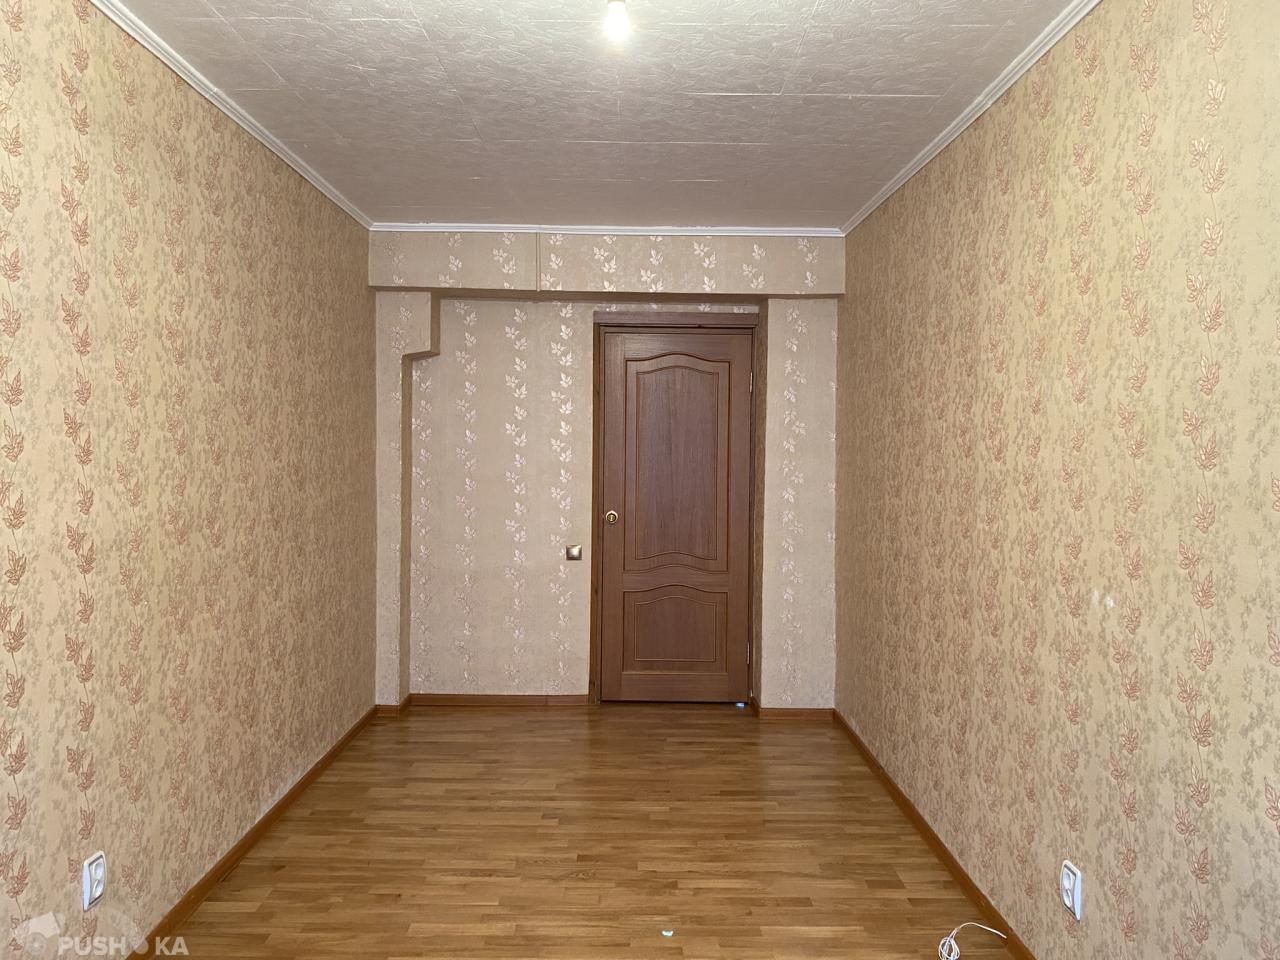 Купить трёхкомнатную квартиру г Москва, ул Лобненская, д 6 - PUSH-KA.RU, объявление №229430